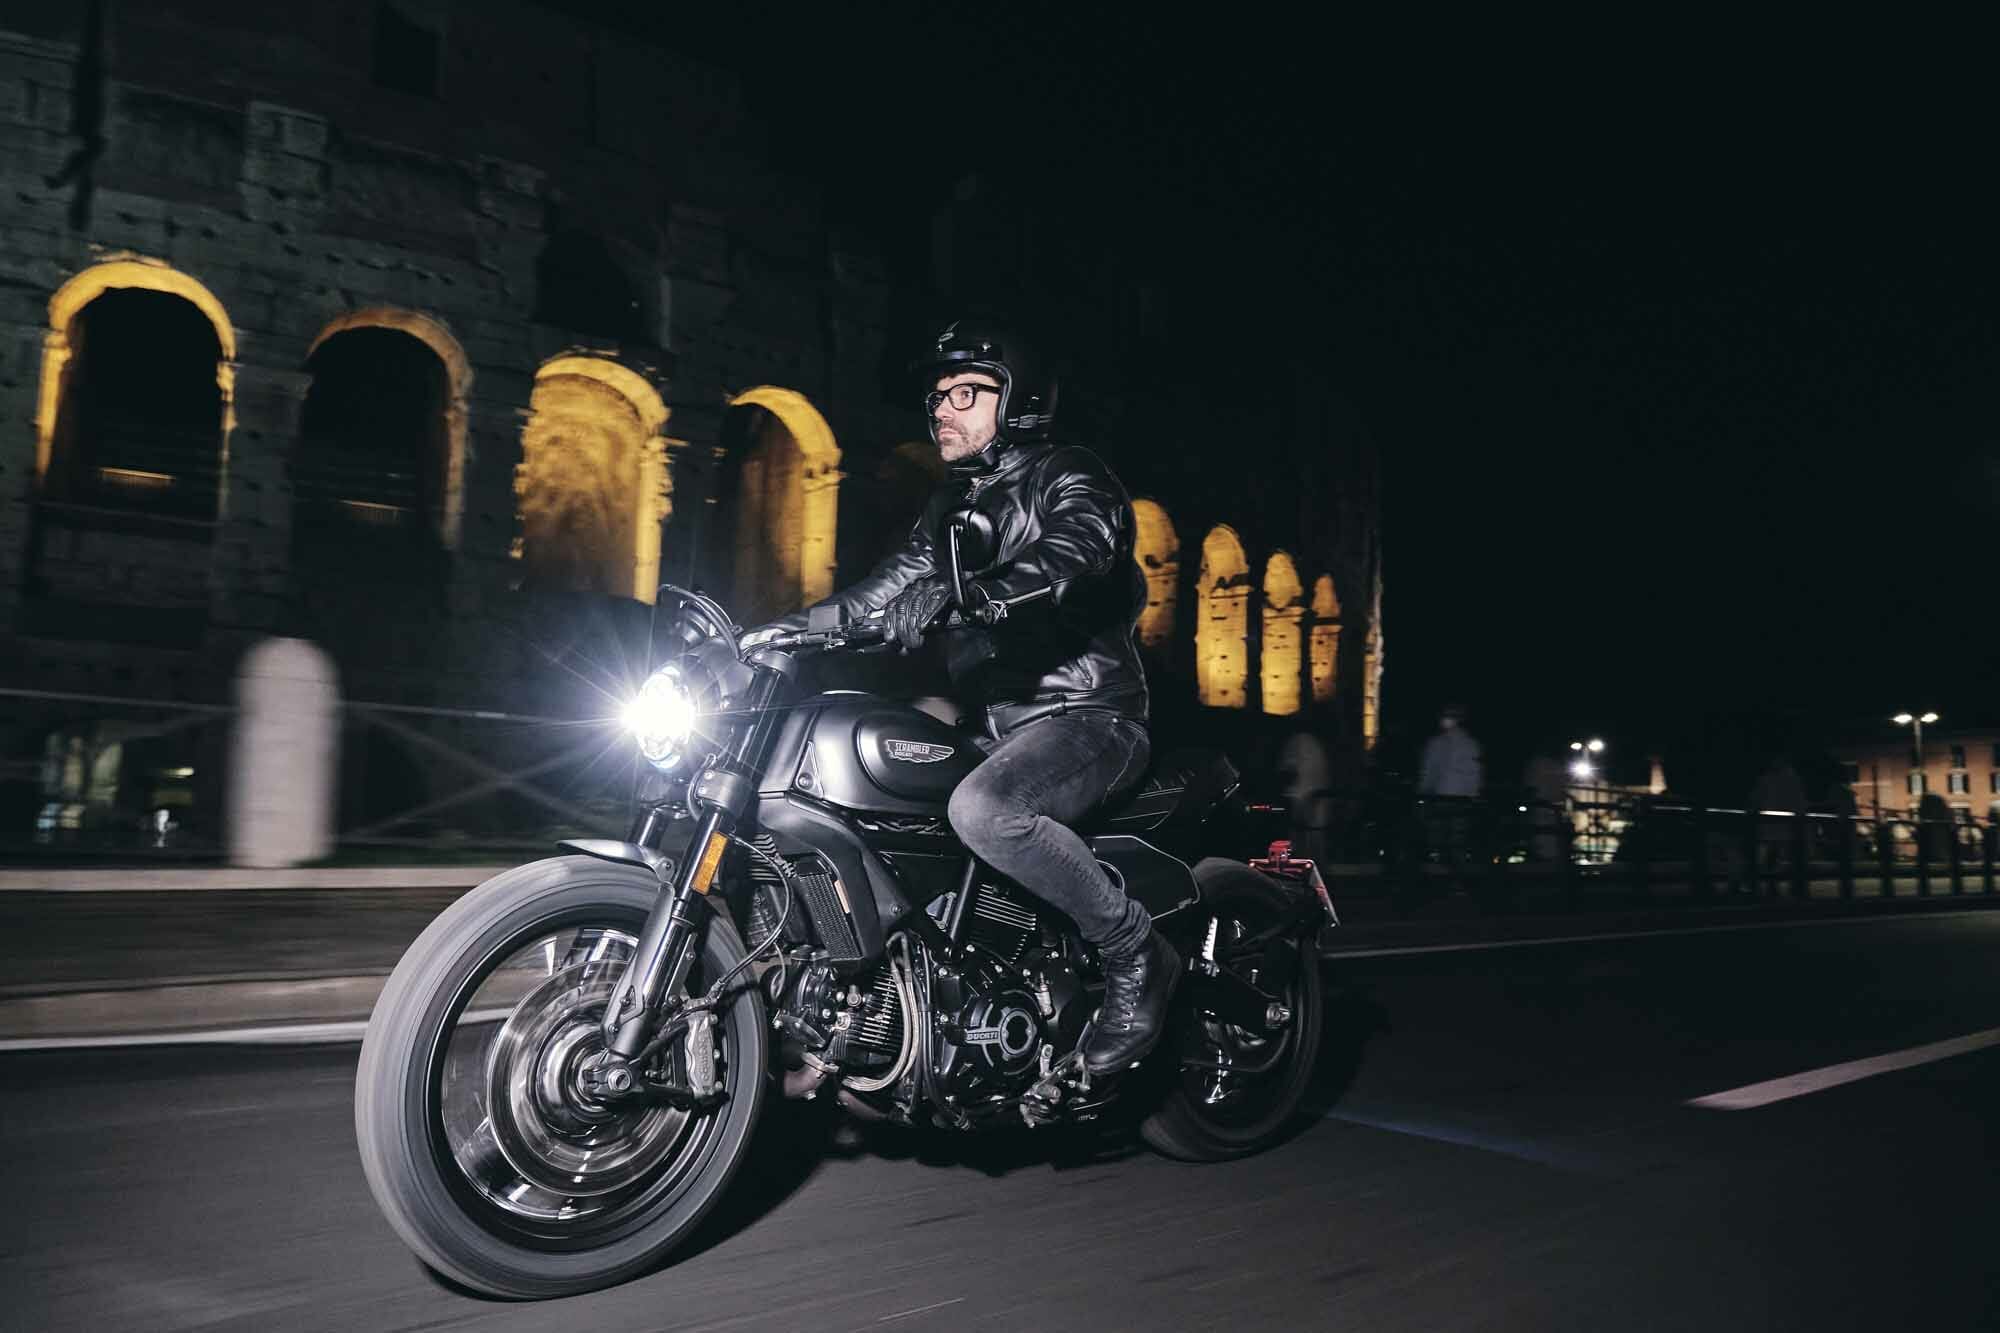 Ducati Rückruf – Blinker nicht hell genug
- auch in der MOTORRAD NACHRICHTEN APP